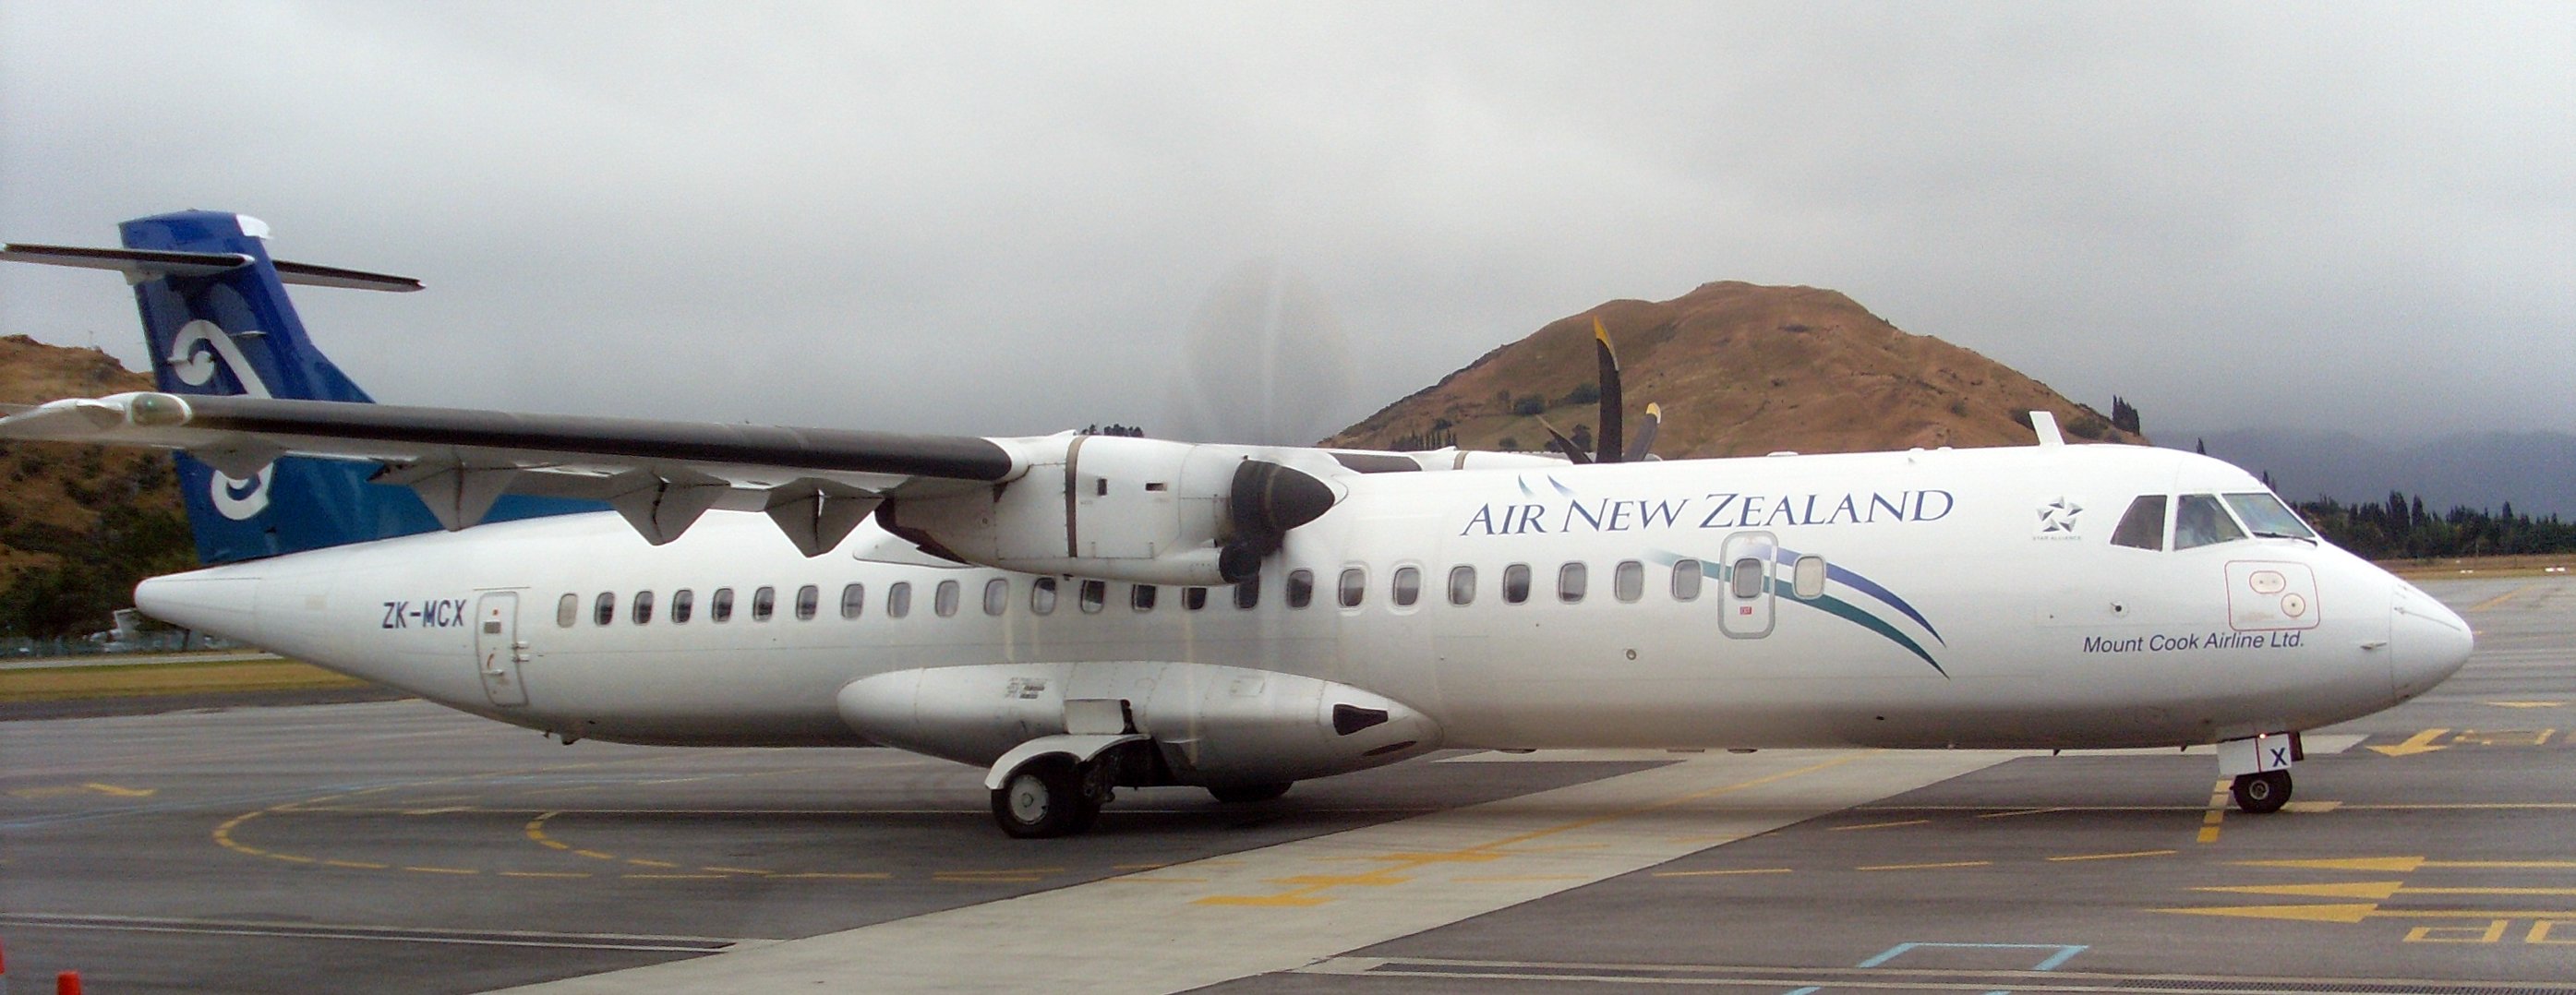 Air New Zealand ATR 72-200 ZK-MCX Queenstown